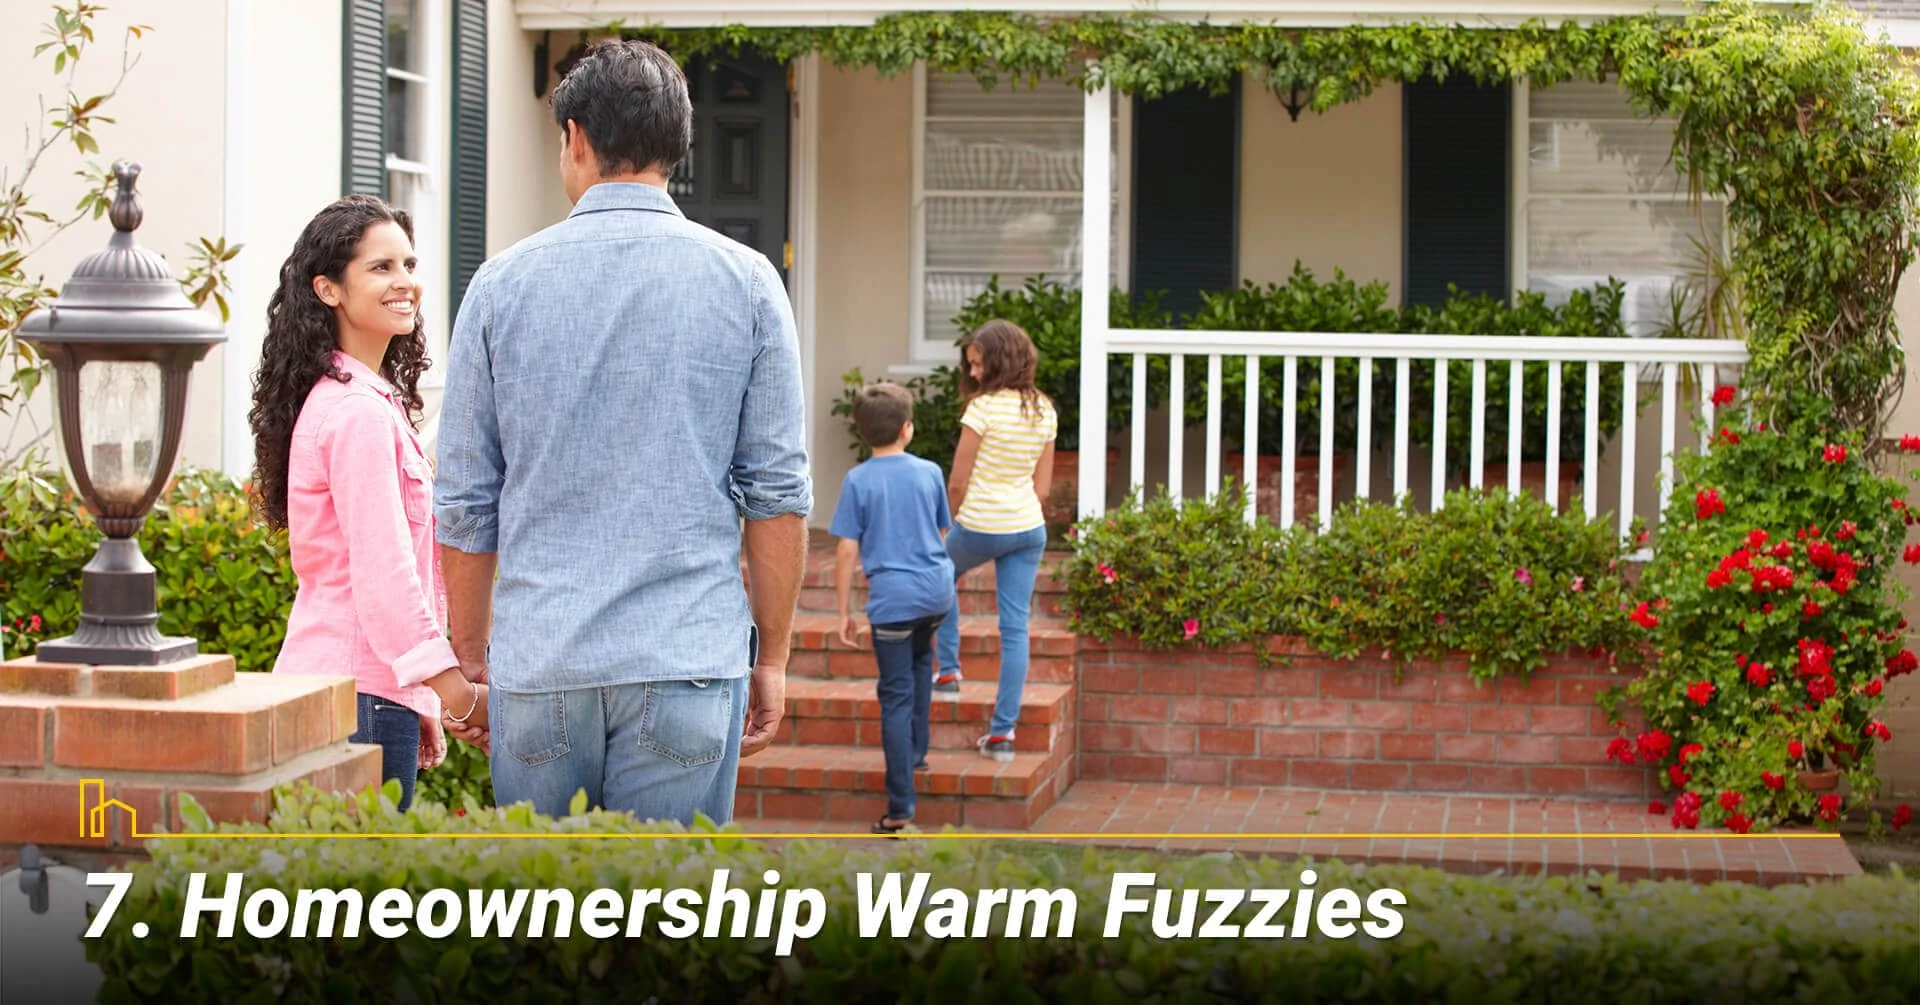 Homeownership Warm Fuzzies, home sweet home